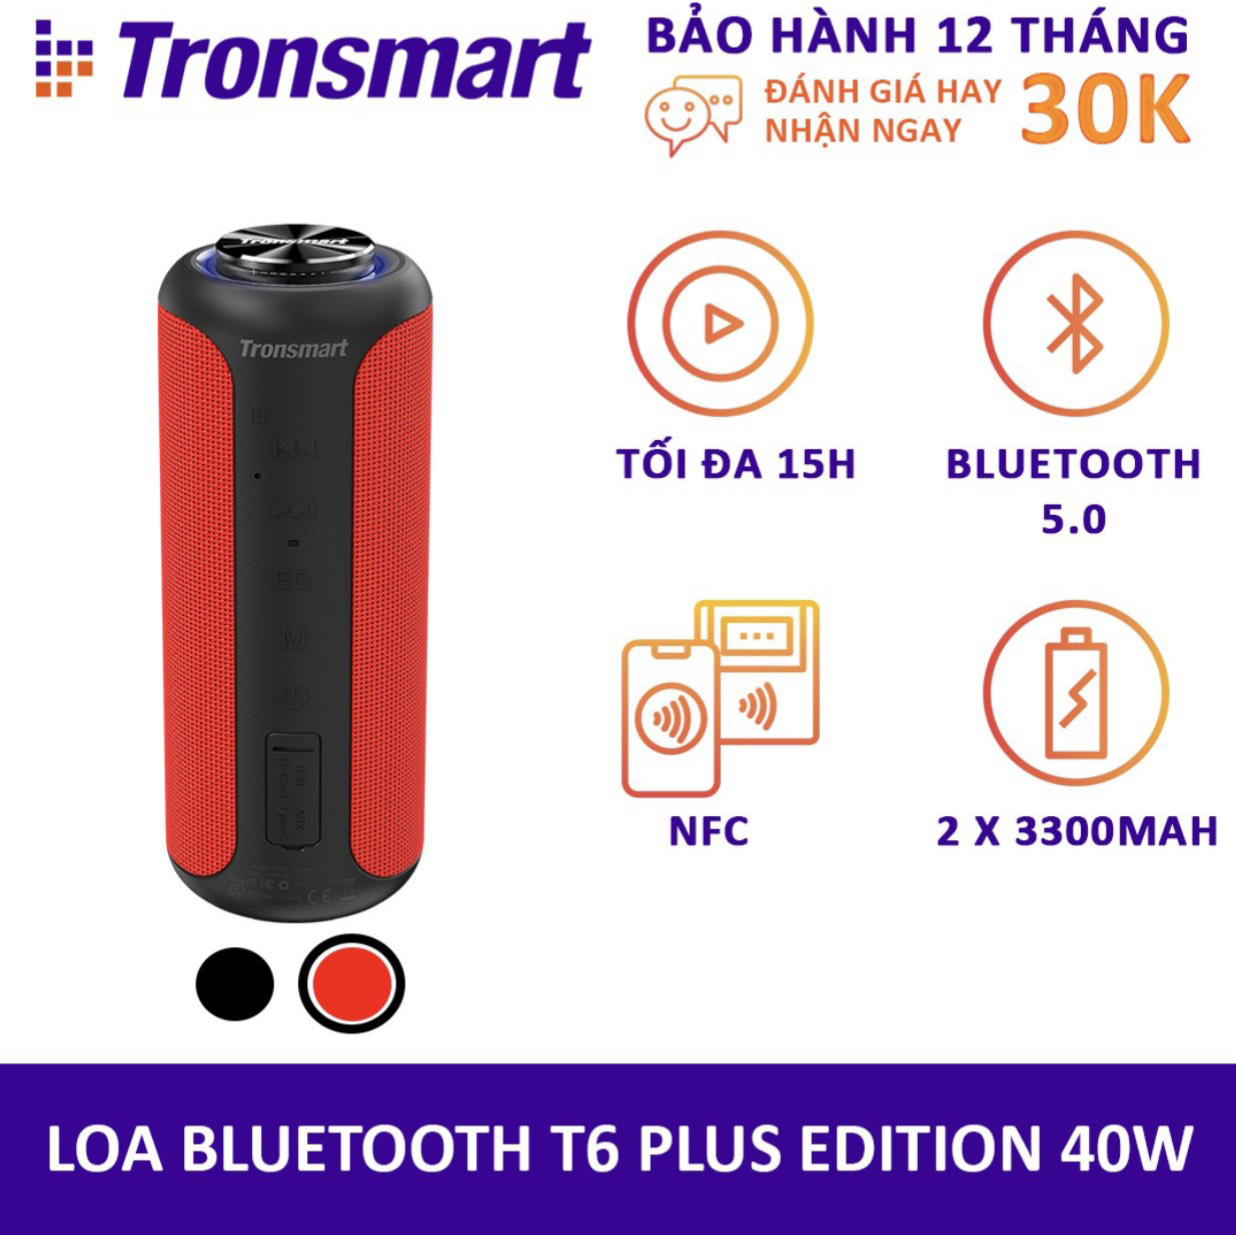 Loa Bluetooth 5.0 Tronsmart T6 Plus / T6 Plus Upgraded Công suất 40W Hỗ trợ TWS ghép đôi 2 loa Âm thanh vòm âm bass sâu và trầm với 3 chế độ EQ Chống nước IPX6 Thời gian nghe nhạc lên tới 24h - Hàng chính hãng bảo hành 12 tháng